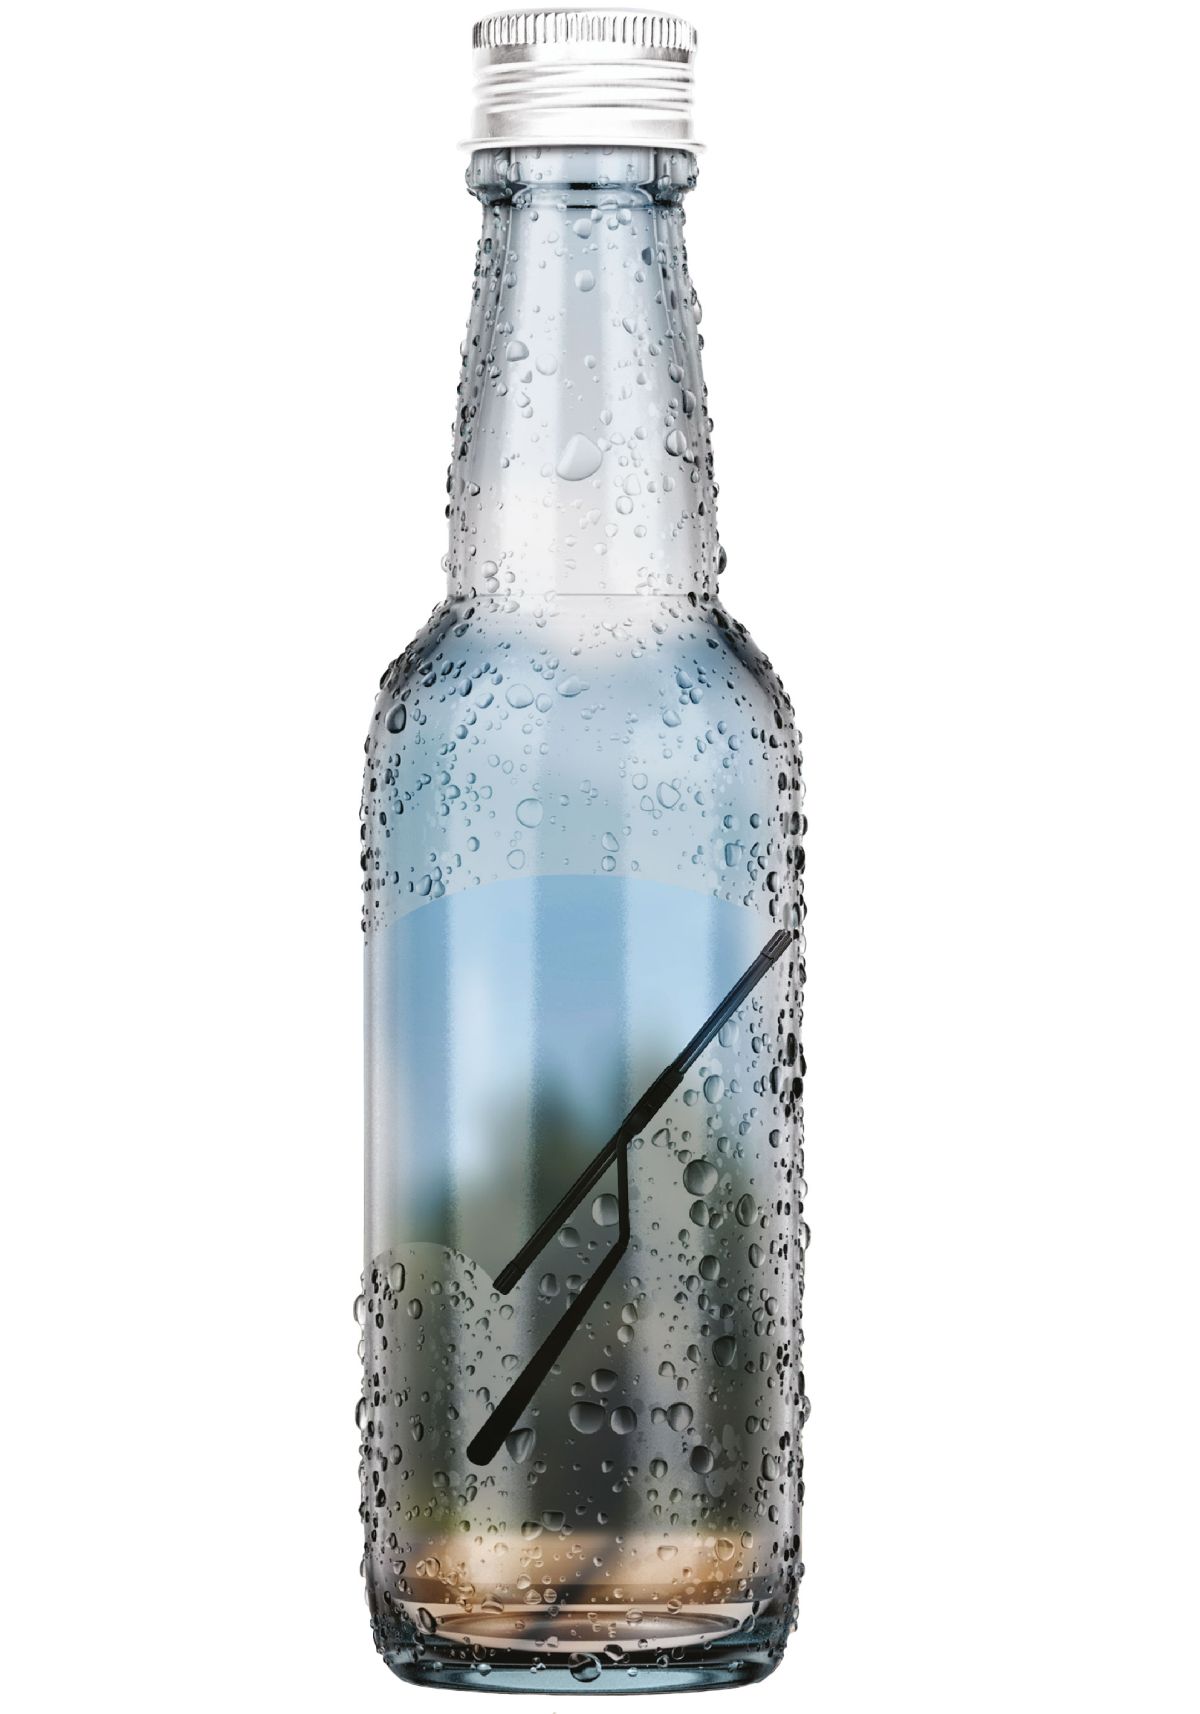 Bottiglie in vetro riciclato: il progetto di Carglass